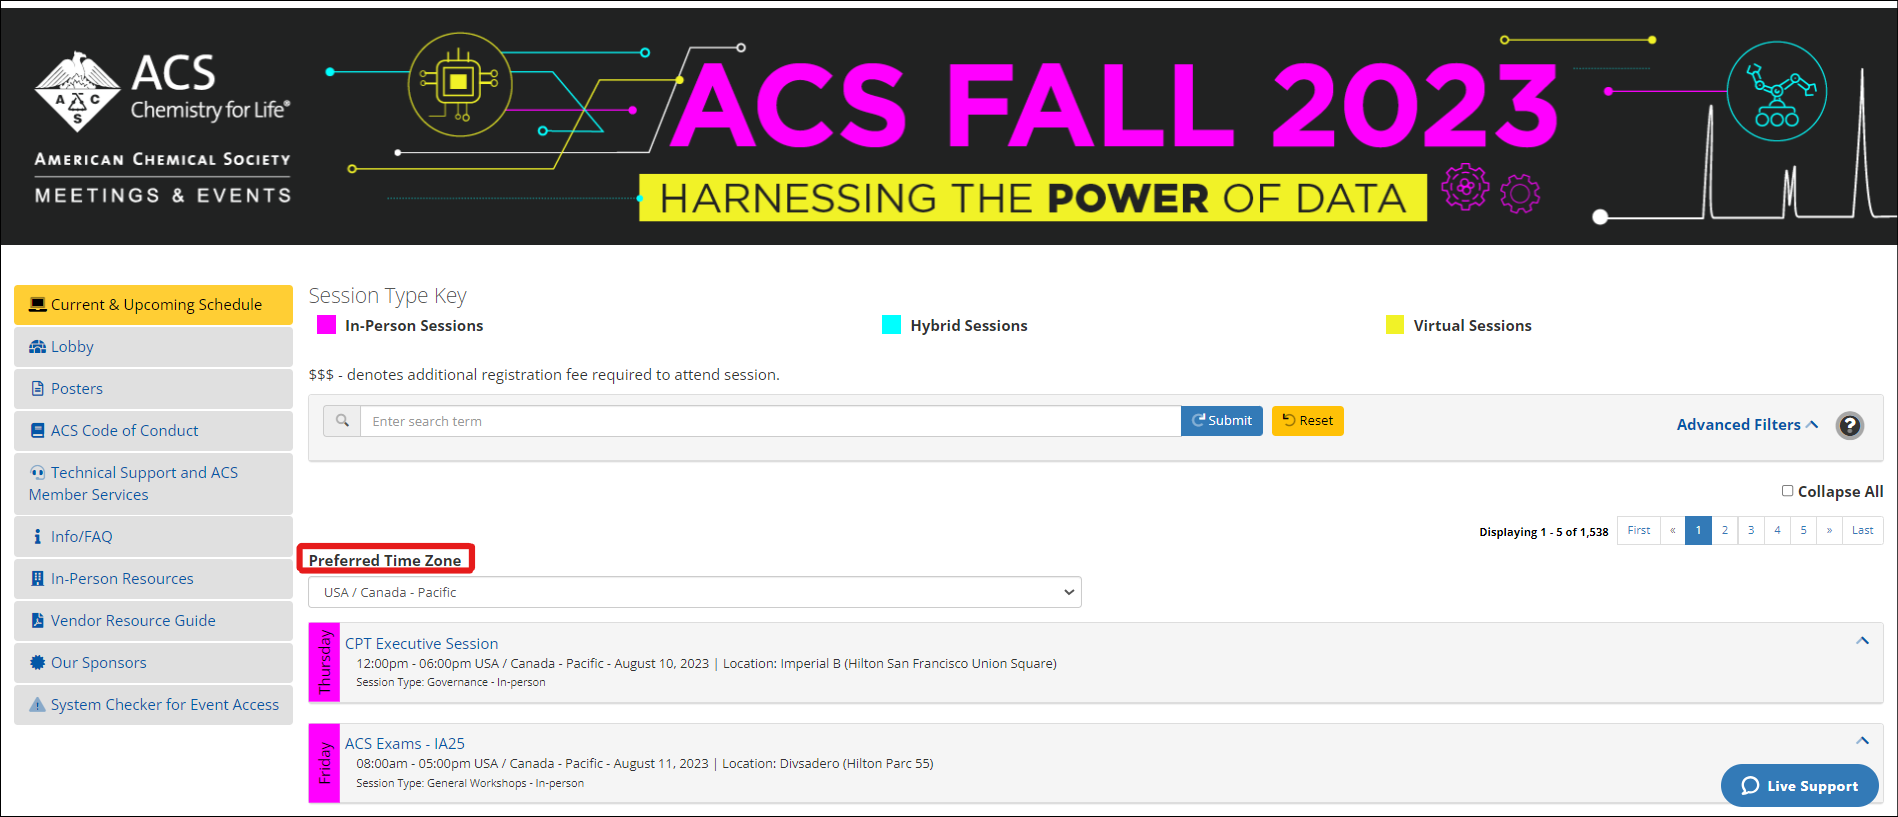 ACS Fall 2023 Info/FAQ